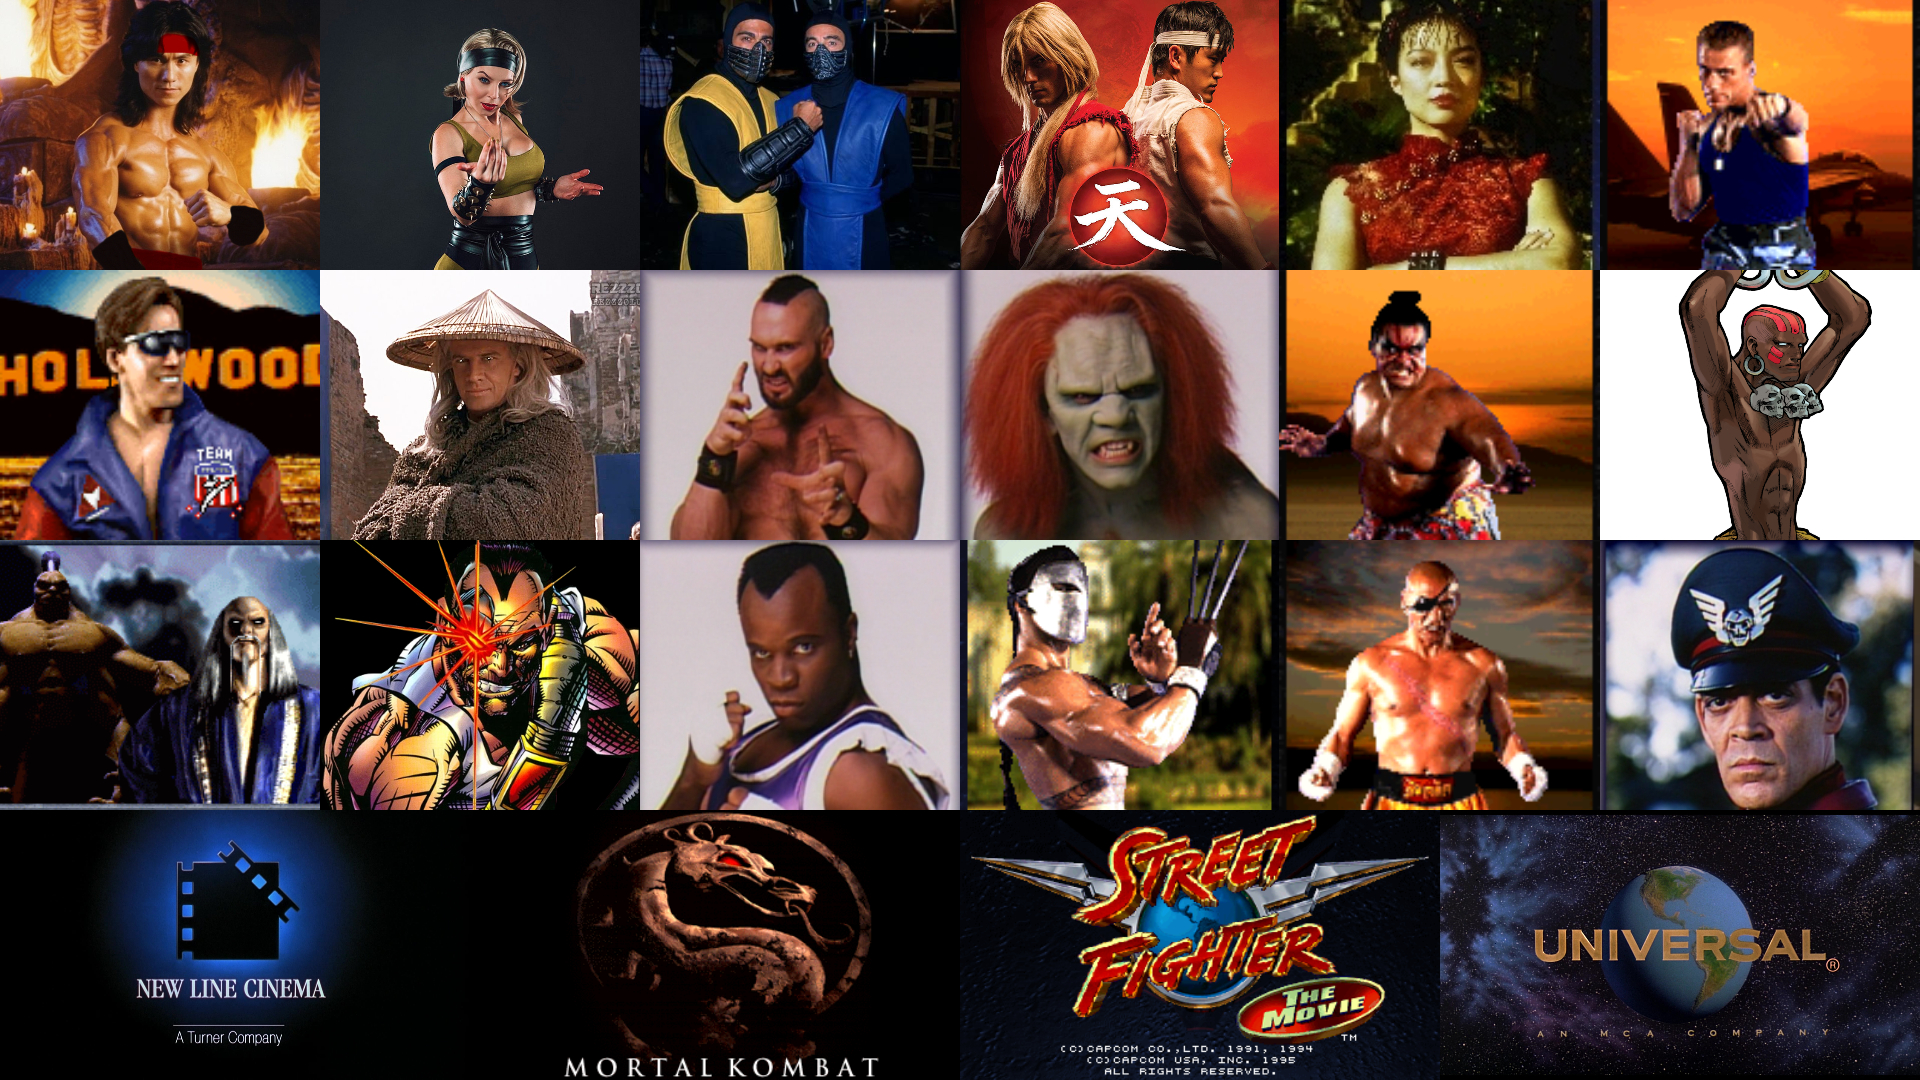 Mortal Kombat (1995) - Shang Tsung by RyuKangLivesAgain on DeviantArt